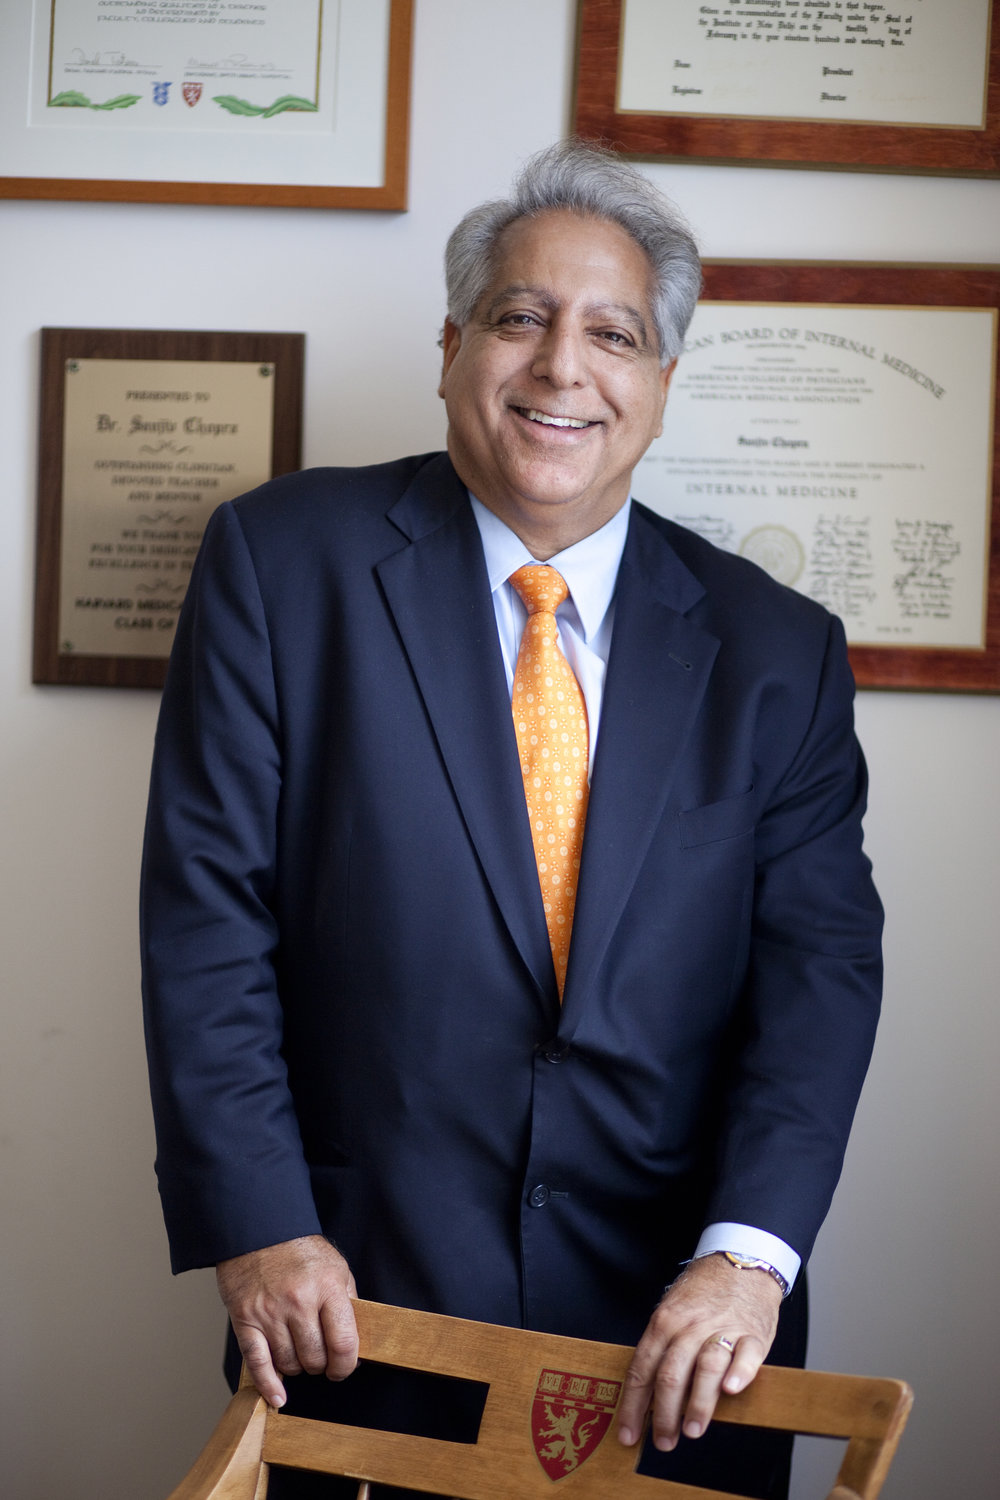 Dr. Sanjiv Chopra